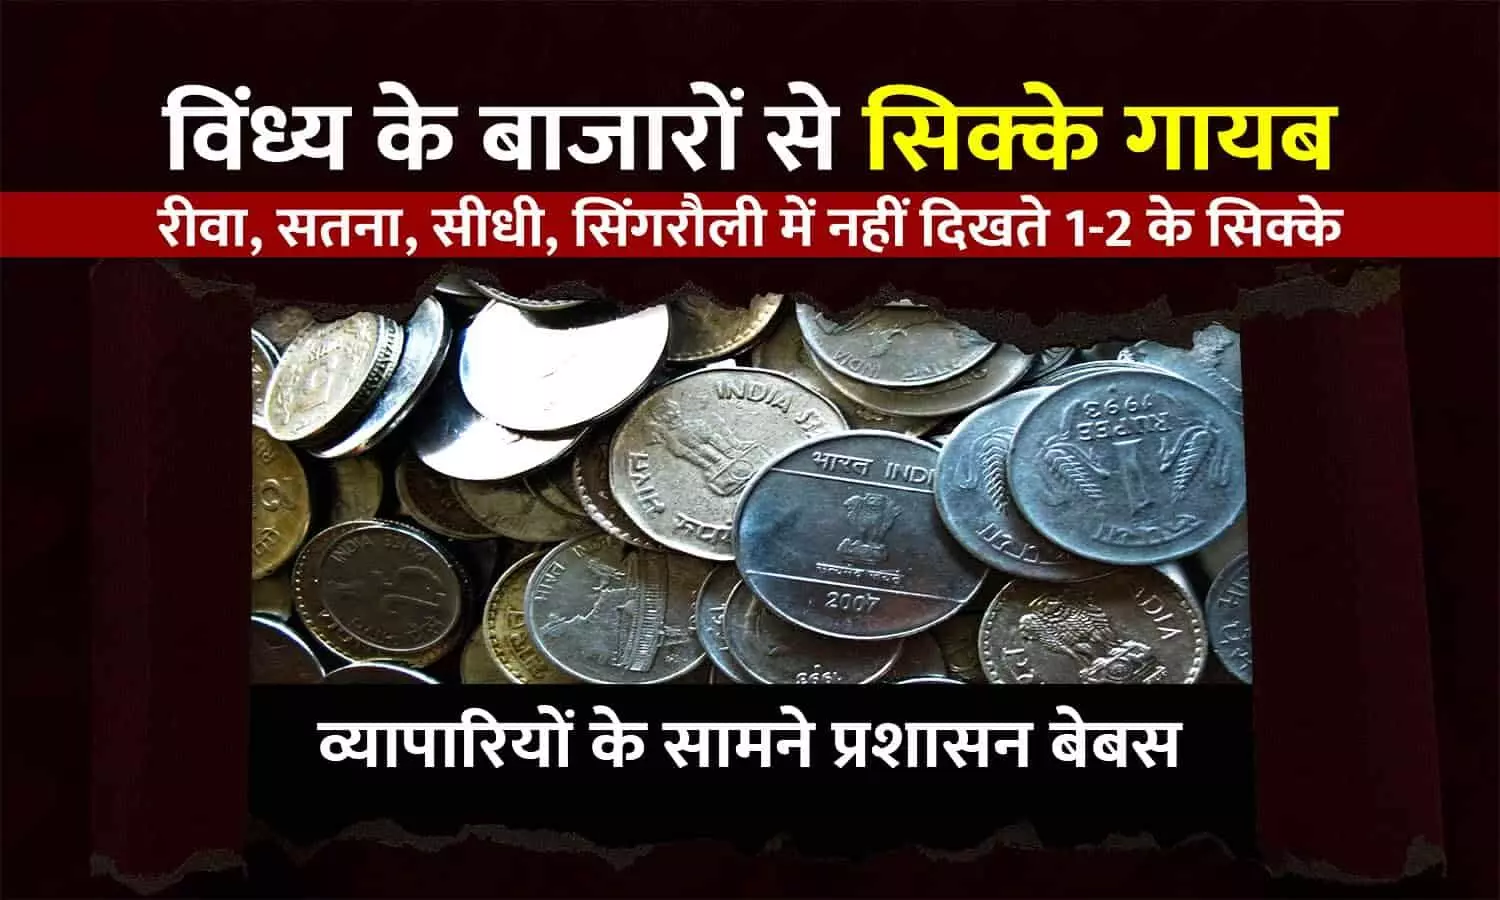 विंध्य के बाजारों से सिक्के गायब: रीवा-सतना में नहीं दिखते 1-2 रुपए के सिक्के, व्यापारियों की मनमानी के आगे प्रशासन बेबस